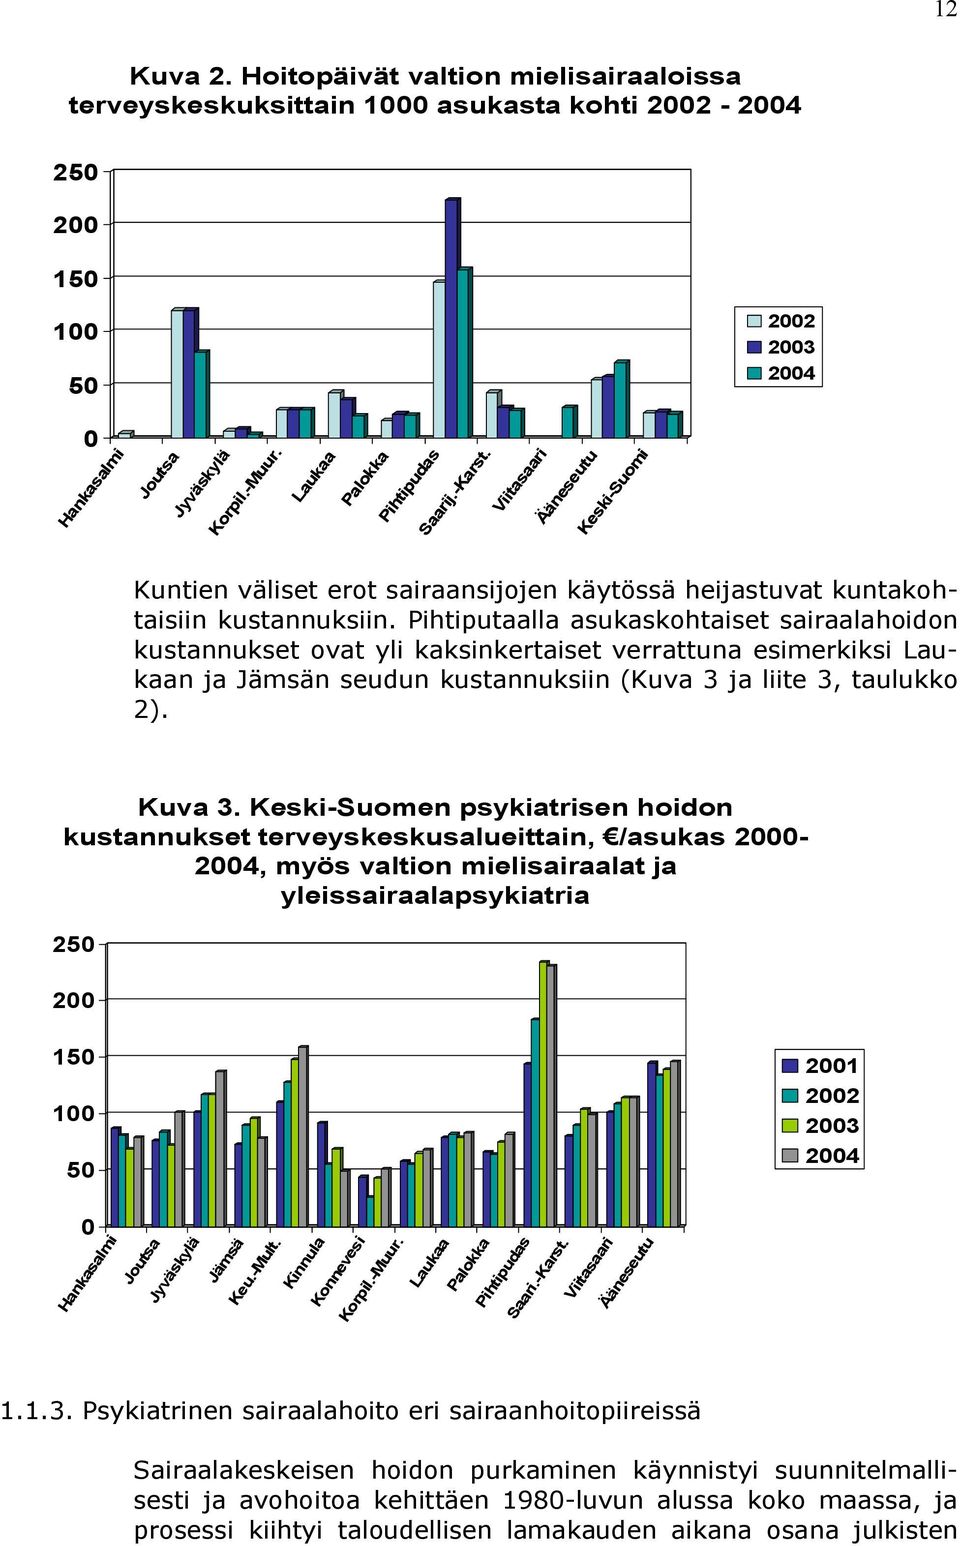 Pihtiputaalla asukaskohtaiset sairaalahoidon kustannukset ovat yli kaksinkertaiset verrattuna esimerkiksi Laukaan ja Jämsän seudun kustannuksiin (Kuva 3 ja liite 3, taulukko 2). Kuva 3.